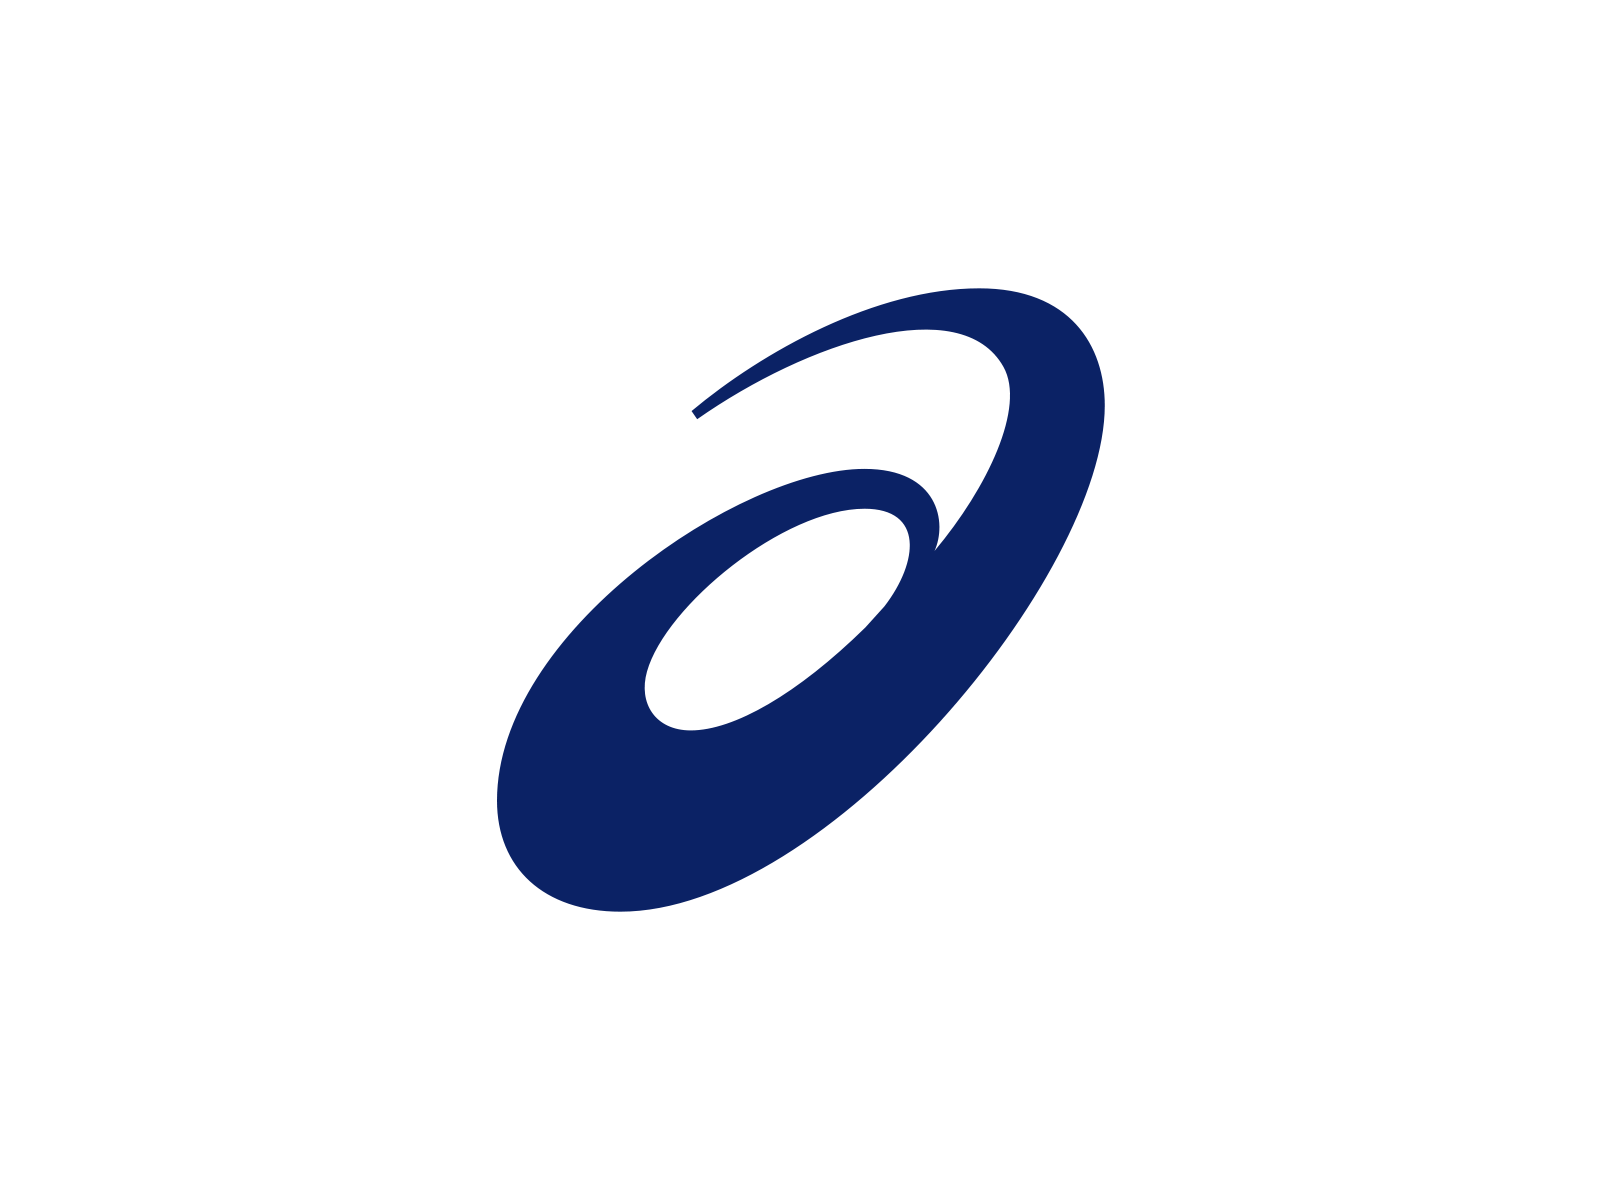 Adidas Originals vector logo 